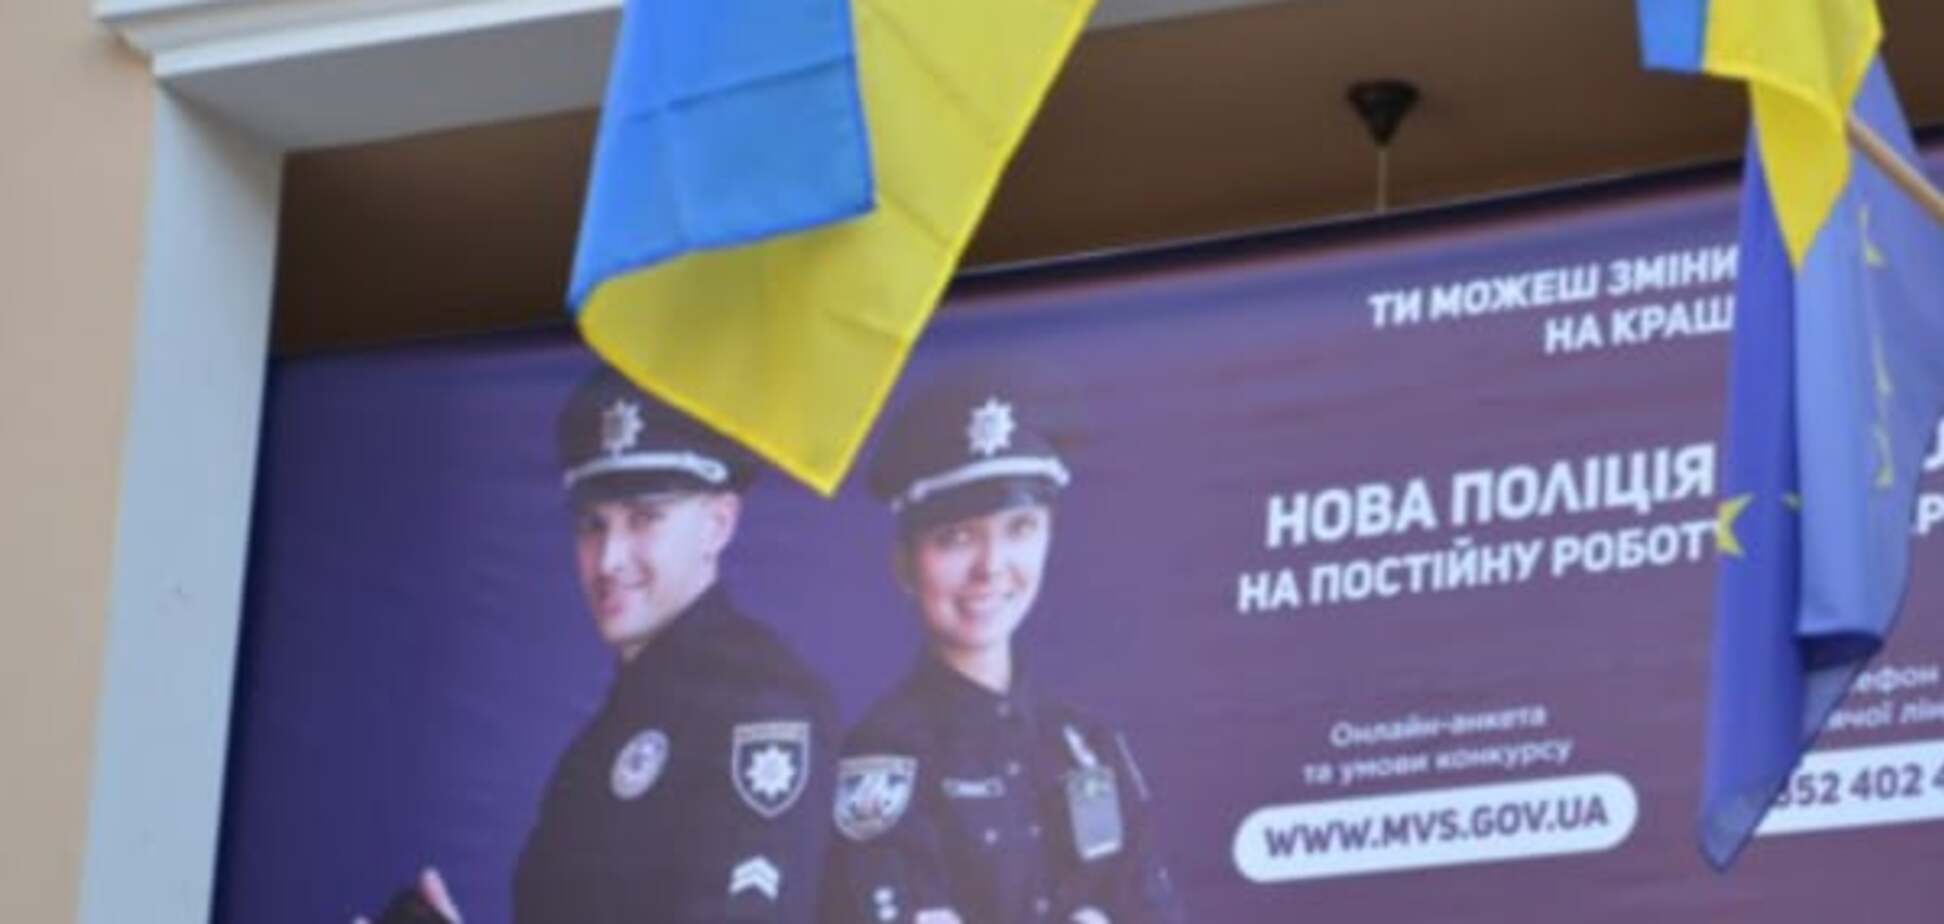 Кожна четверта - дівчина: у Тернополі стартував набір в поліцію: фото і відеофакт